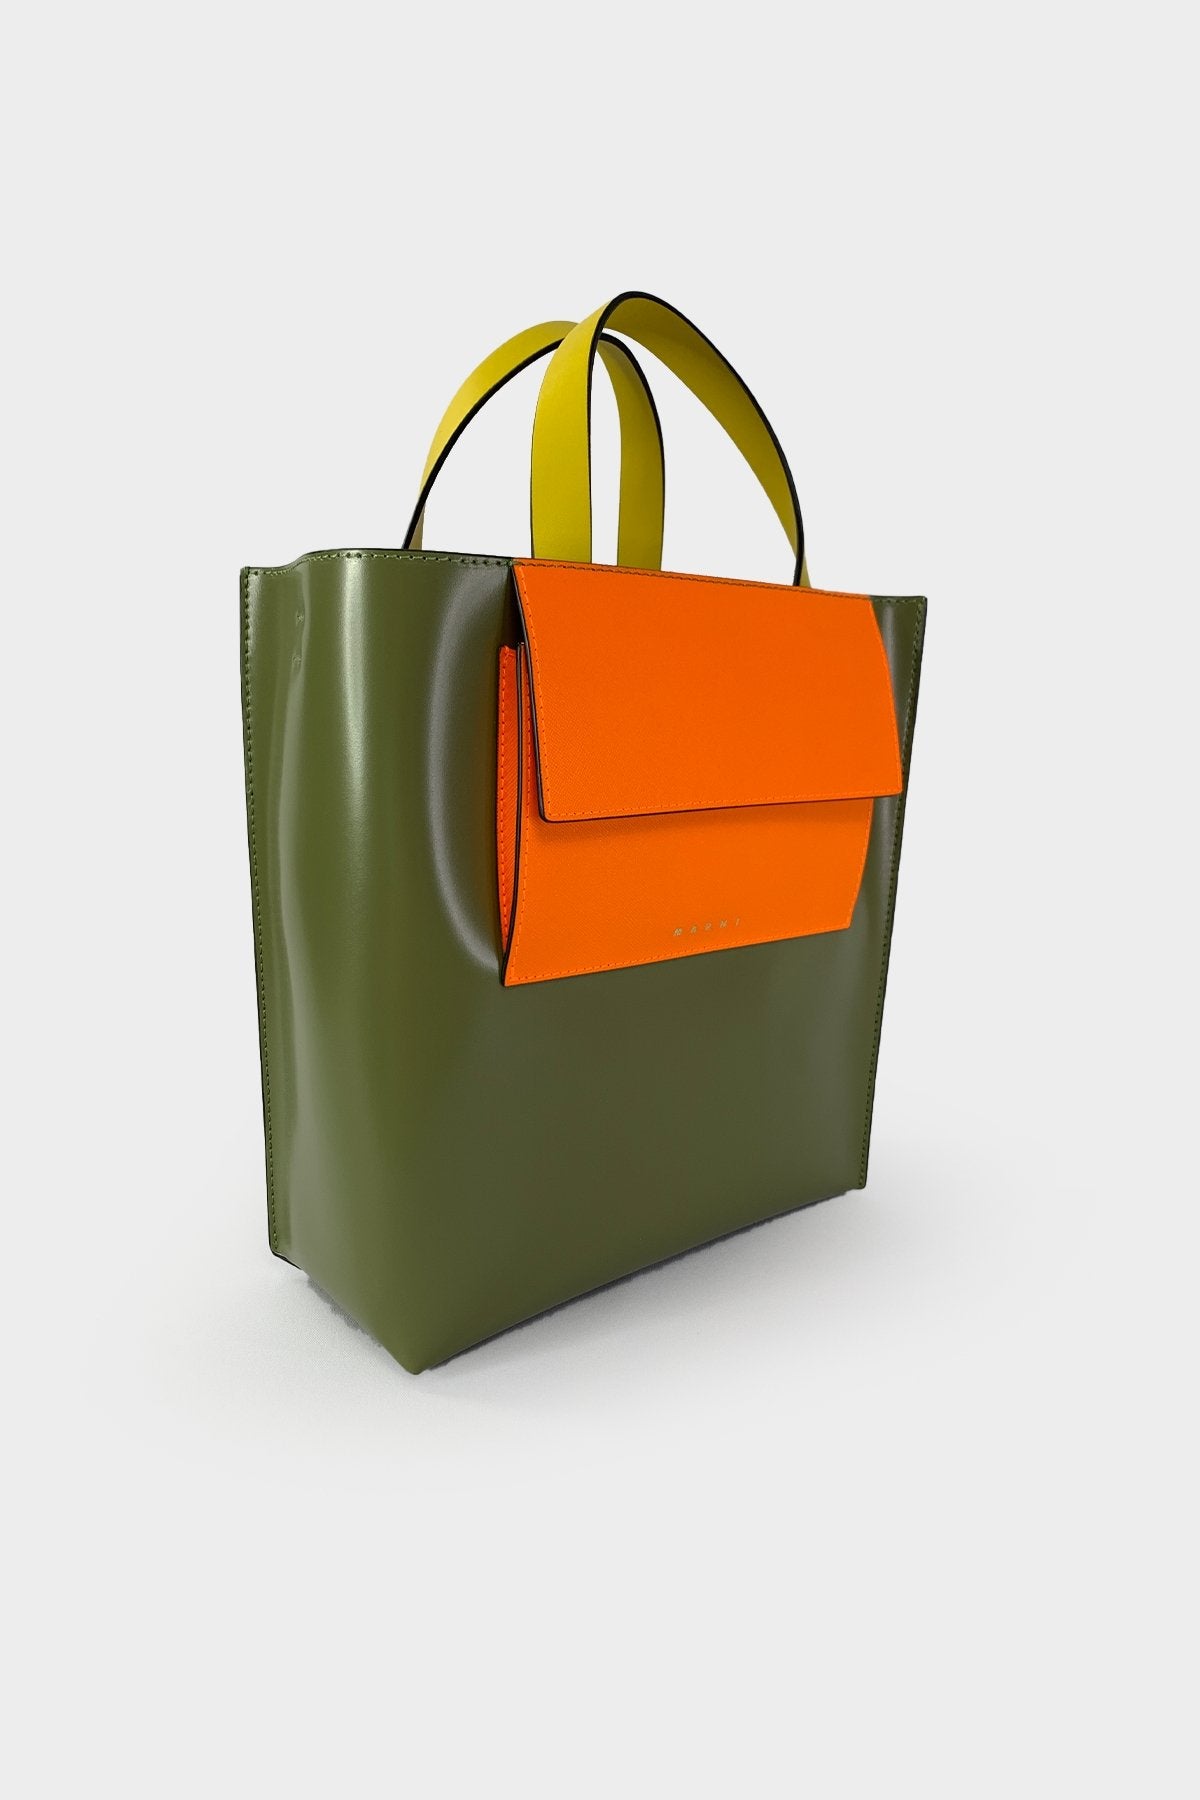 Green Museo Leather Bag with Orange Pocket - shop-olivia.com